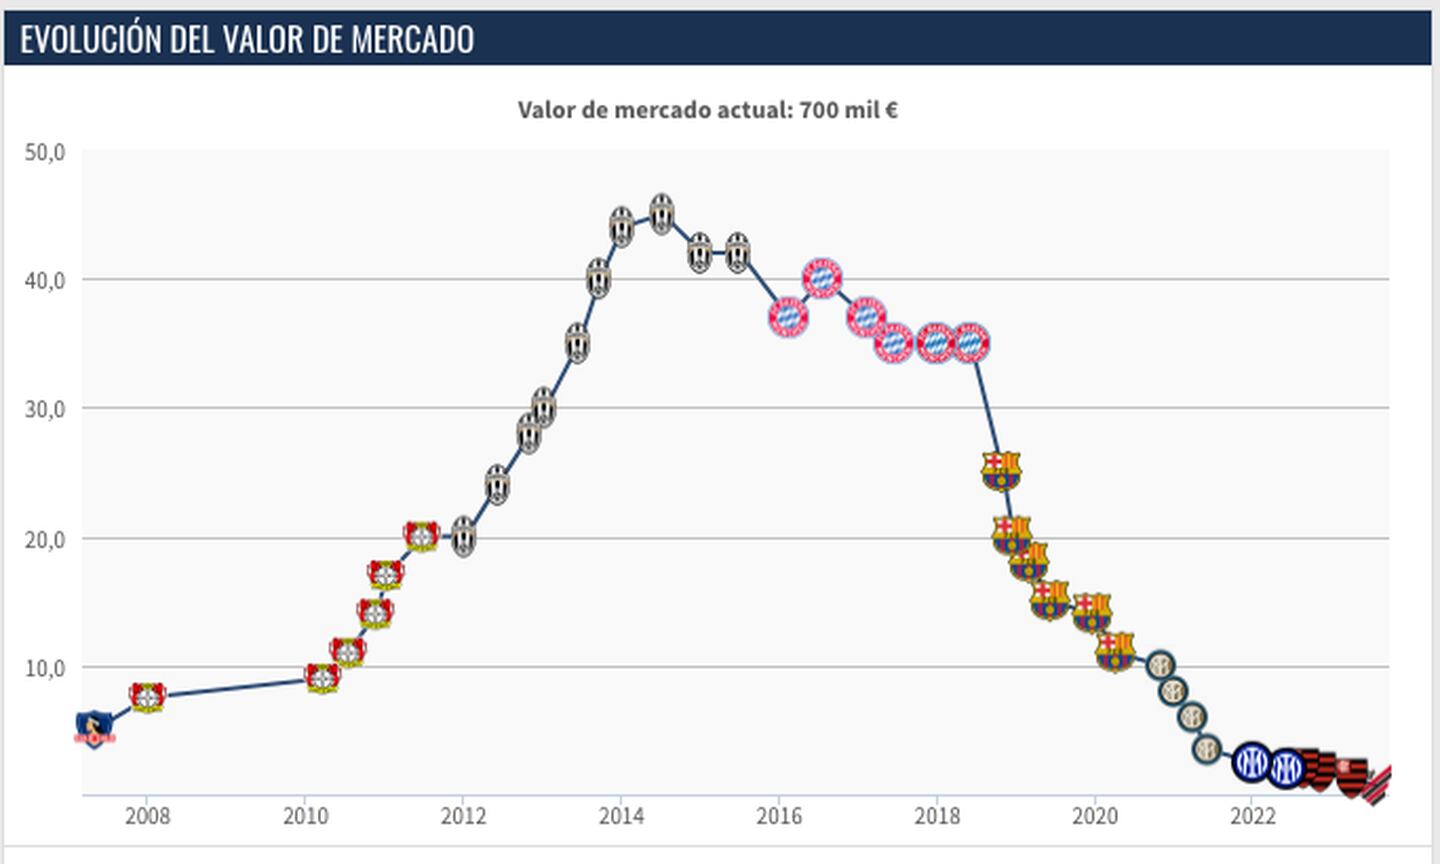 La evolución del valor de mercado de Arturo Vidal